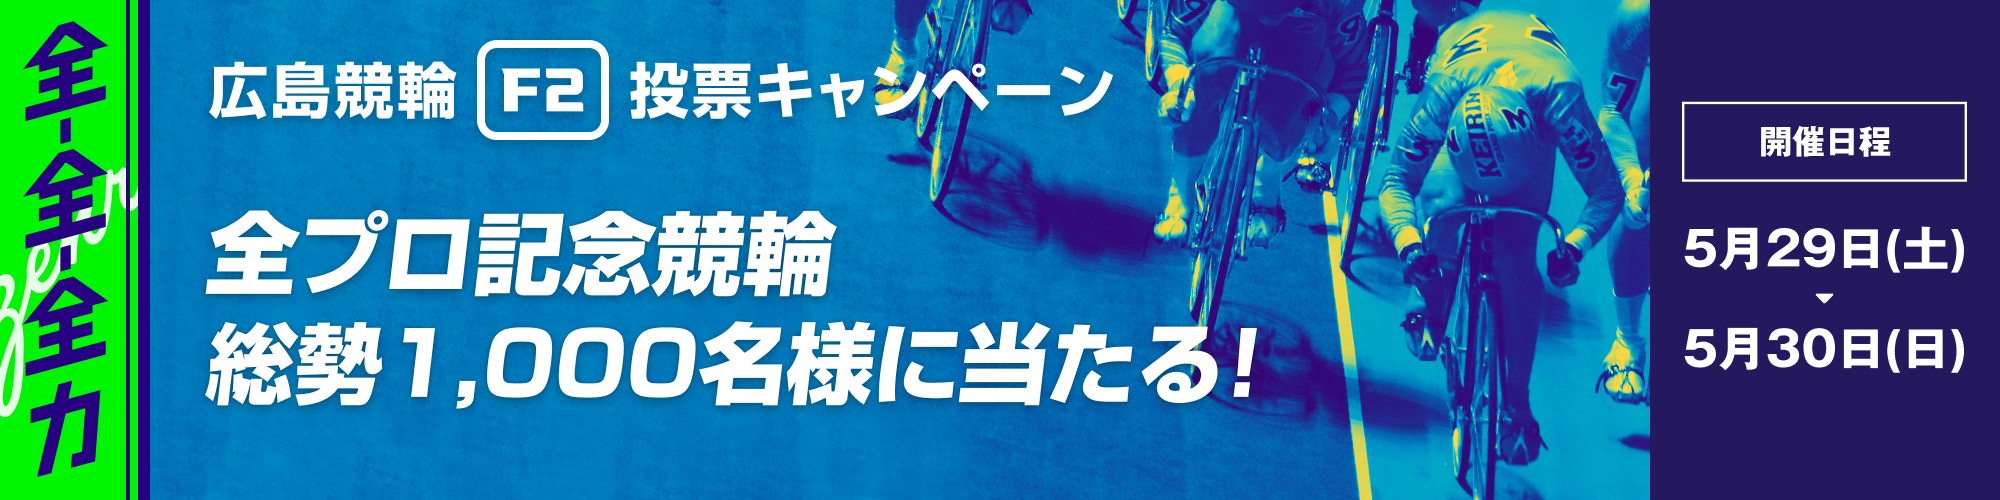 広島競輪F2 全プロ記念競輪投票キャンペーン